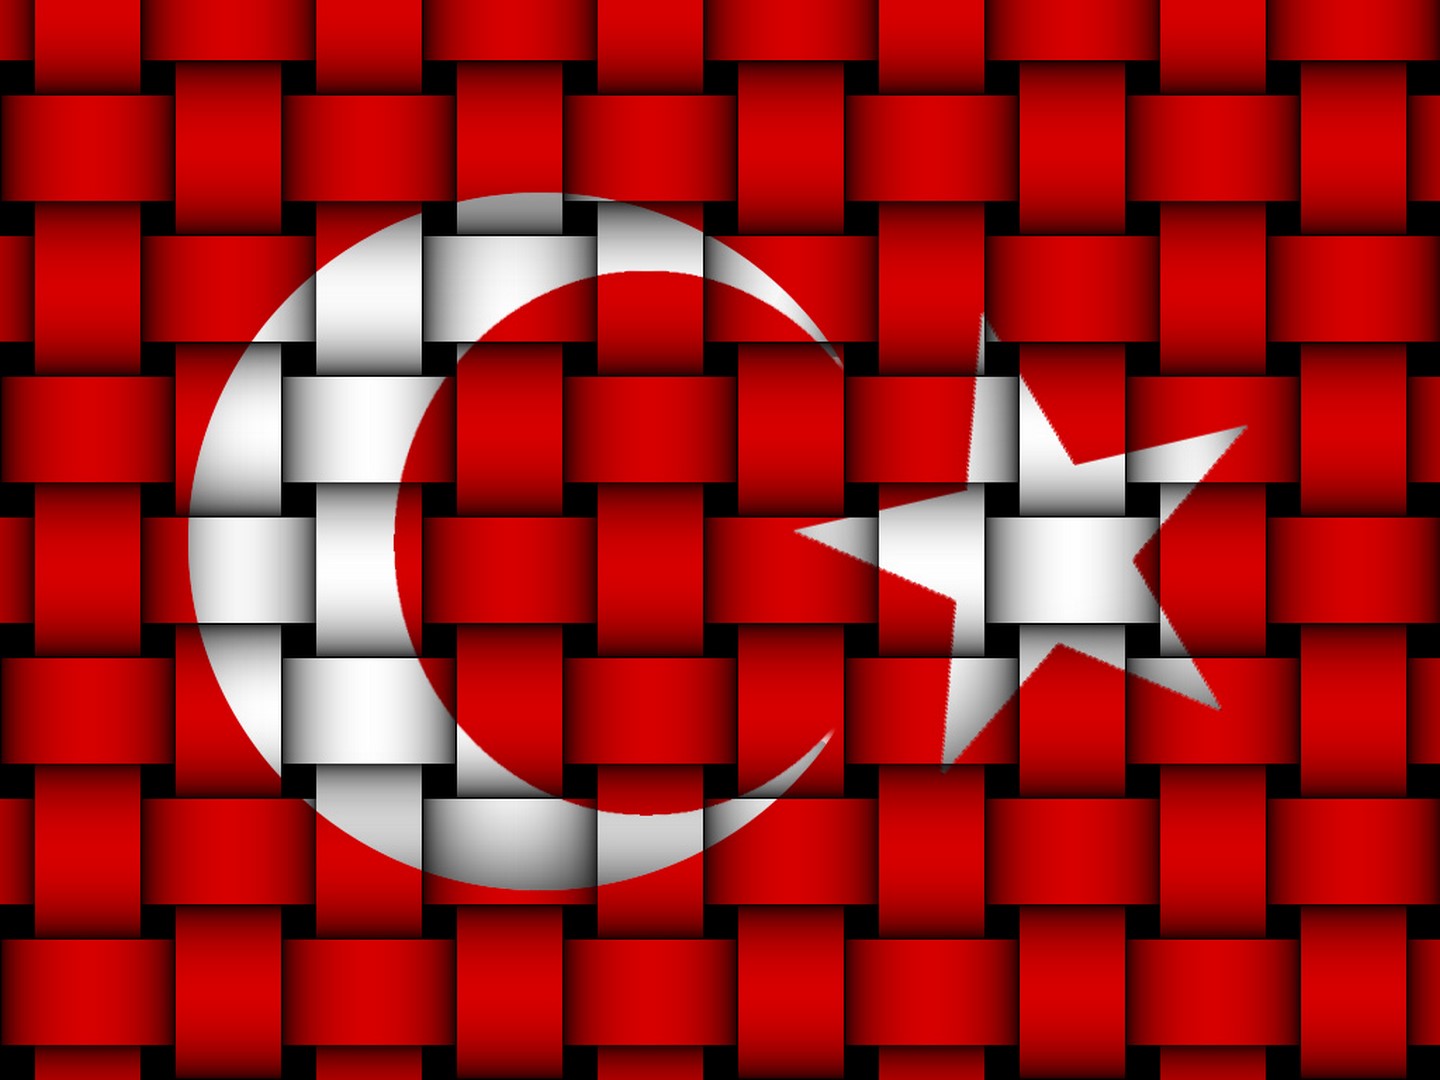 en guzel turk bayragi resimleri 13